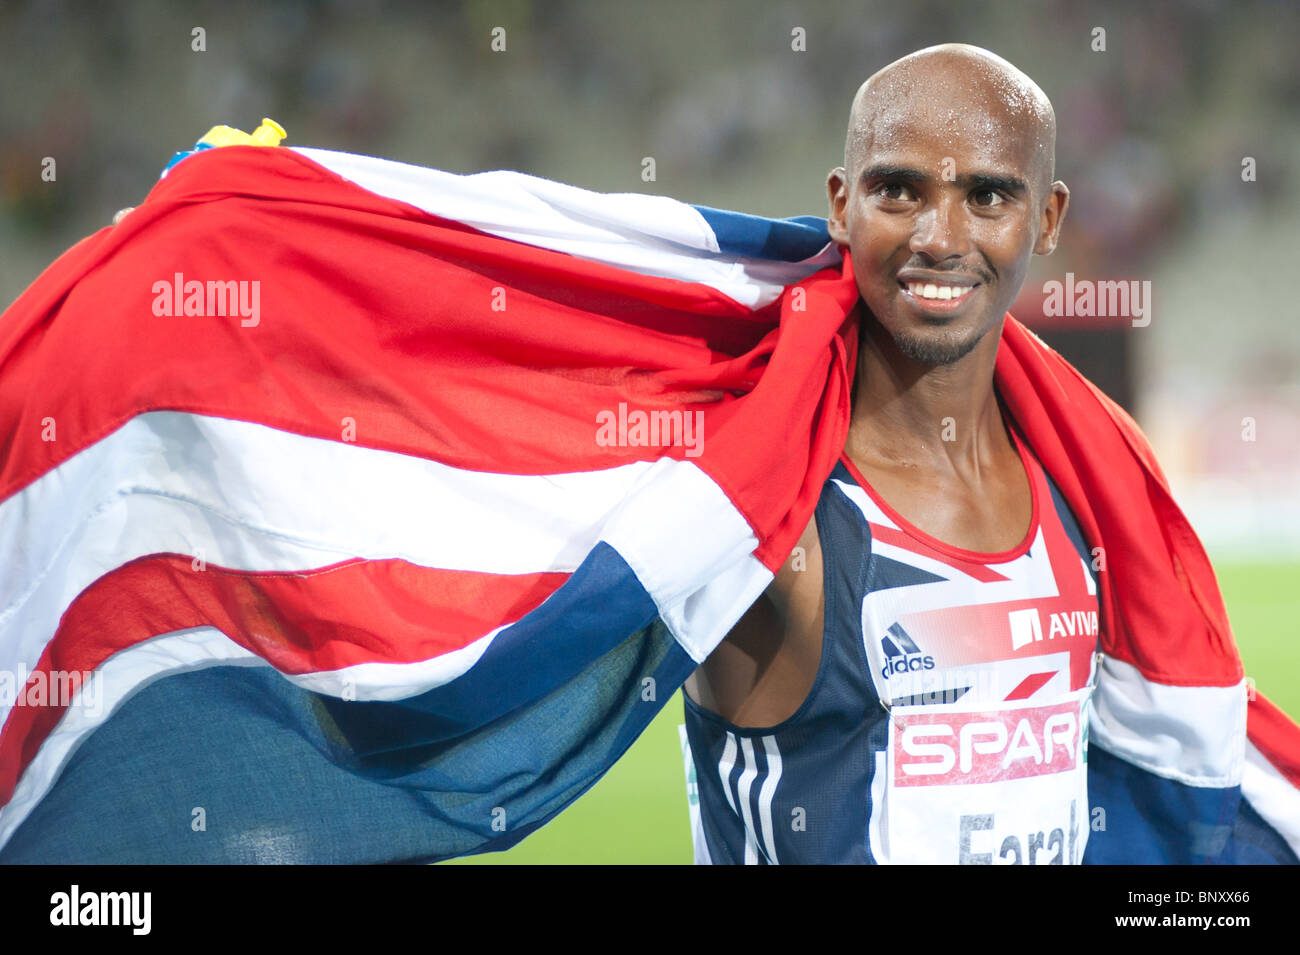 31 juillet 2010 BARCELONE : 10000m médaillé d'athlète britannique Mo Farah remporte également la médaille d'or dans le 5000m Finale. Banque D'Images